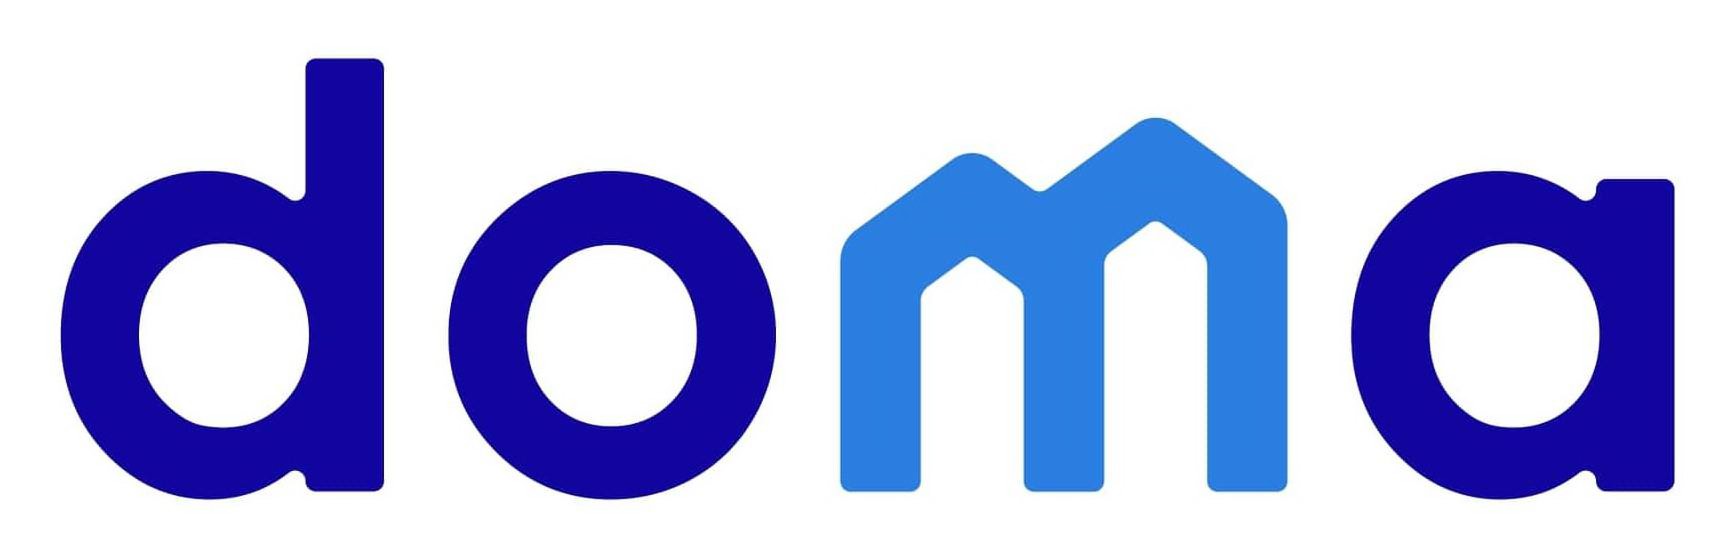 Trademark Logo DOMA